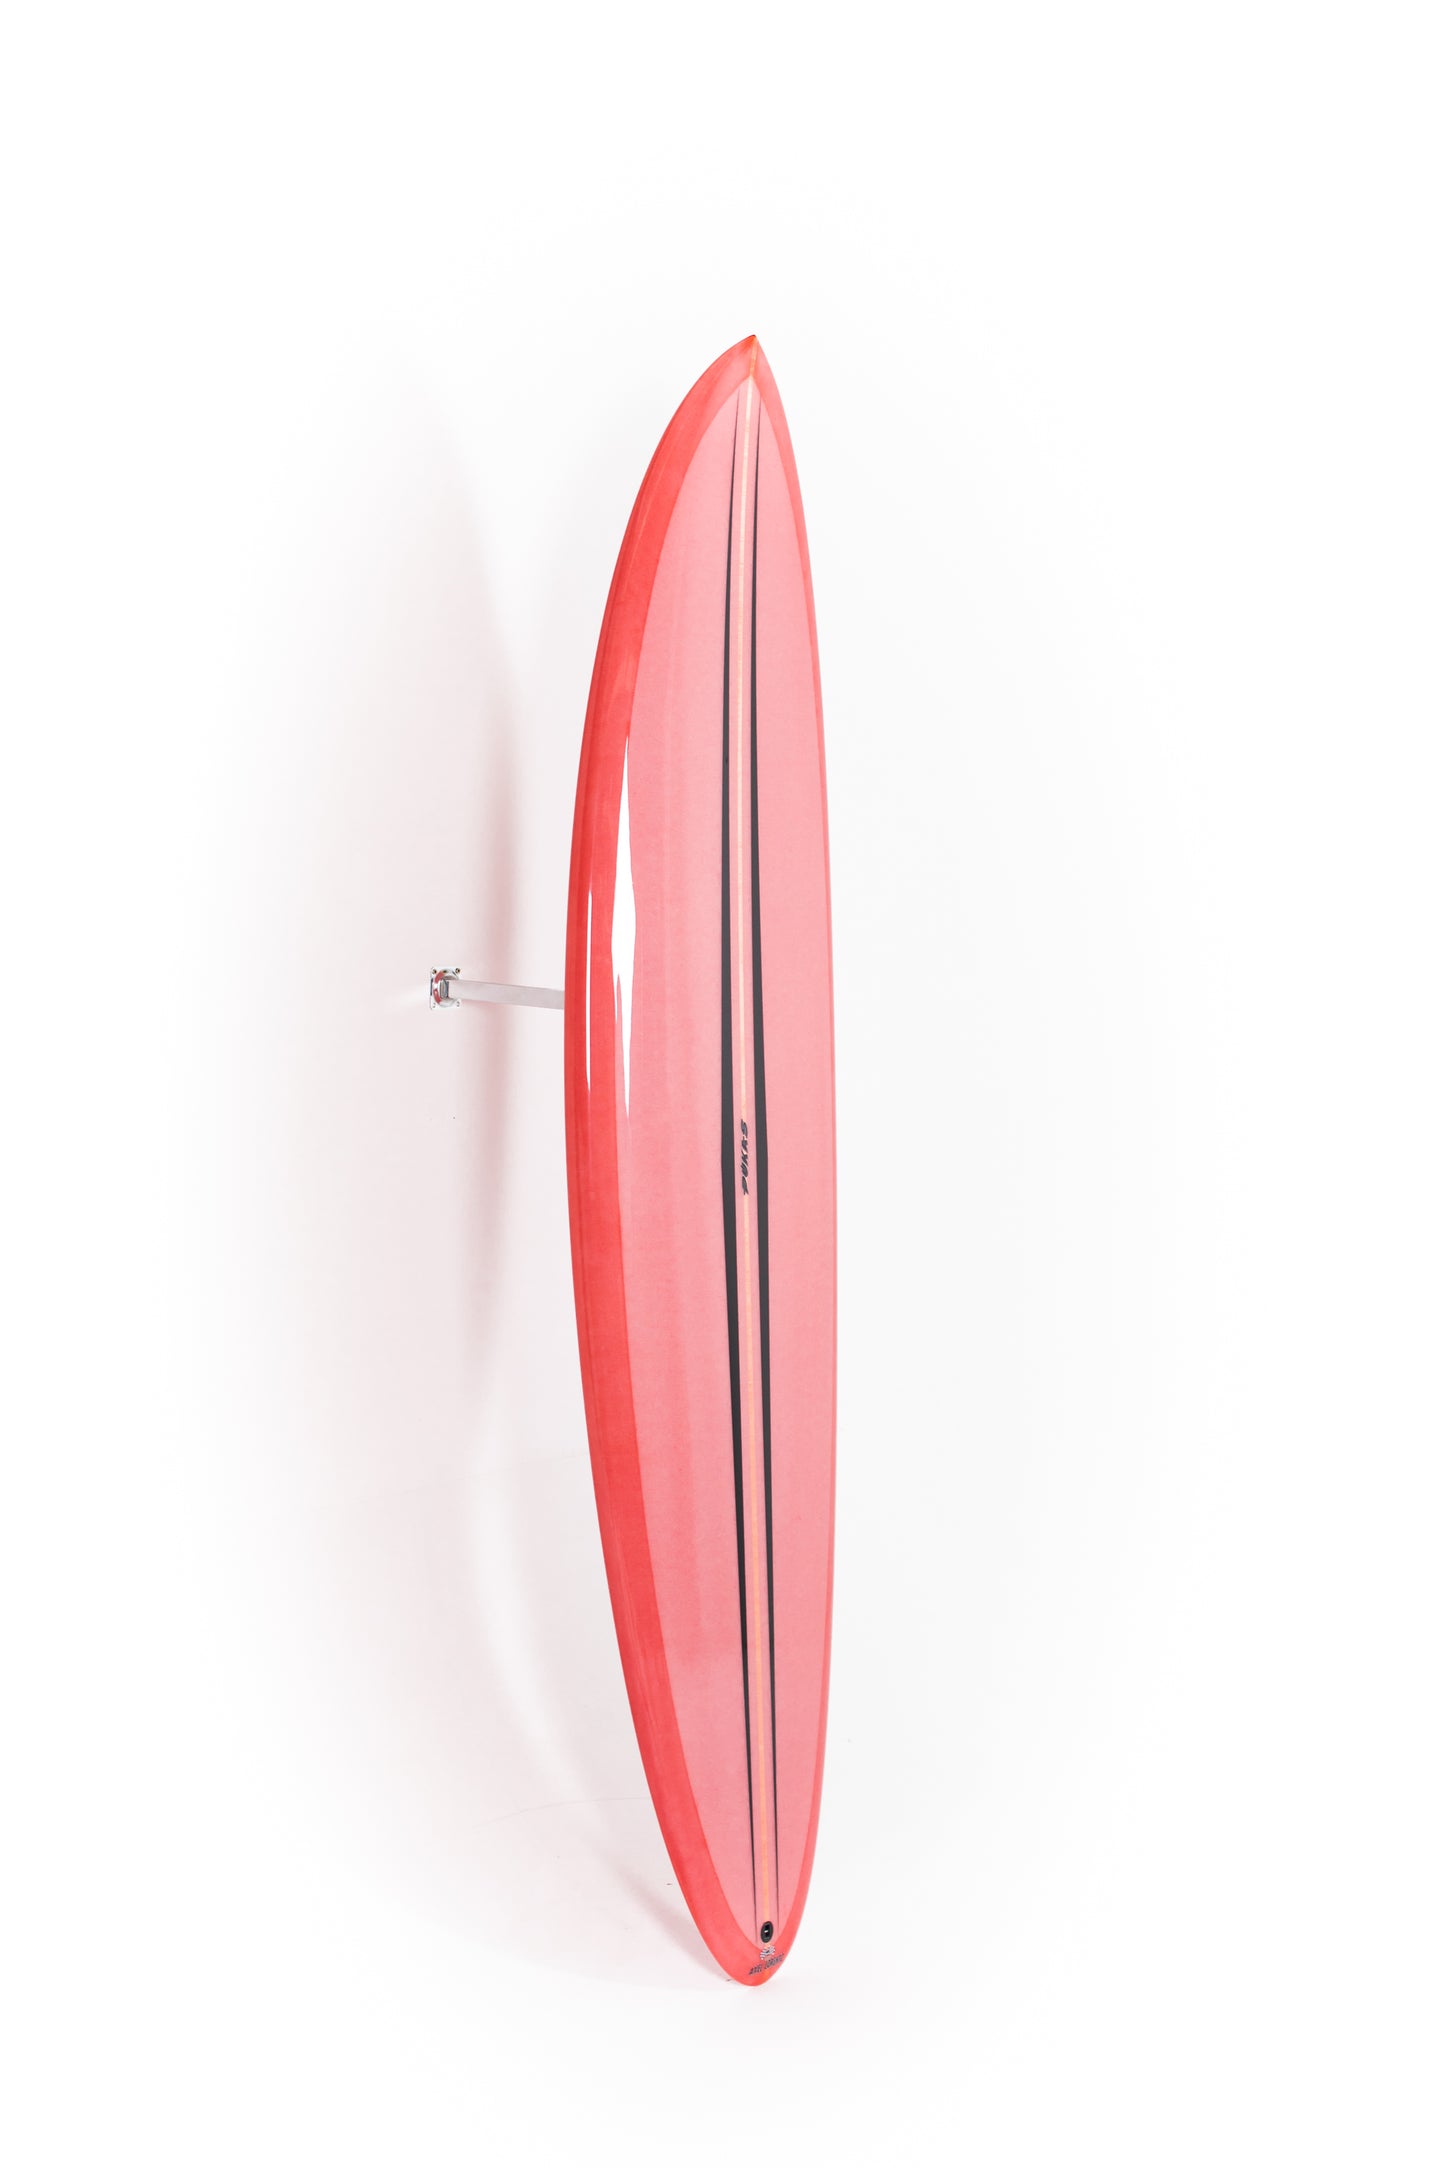 
                  
                    Pukas Surf Shop - Pukas Surfboard - LA CÔTE by Axel Lorentz - 6´11" x 21,44 x 2,97 - 48,05L -  AX09633
                  
                